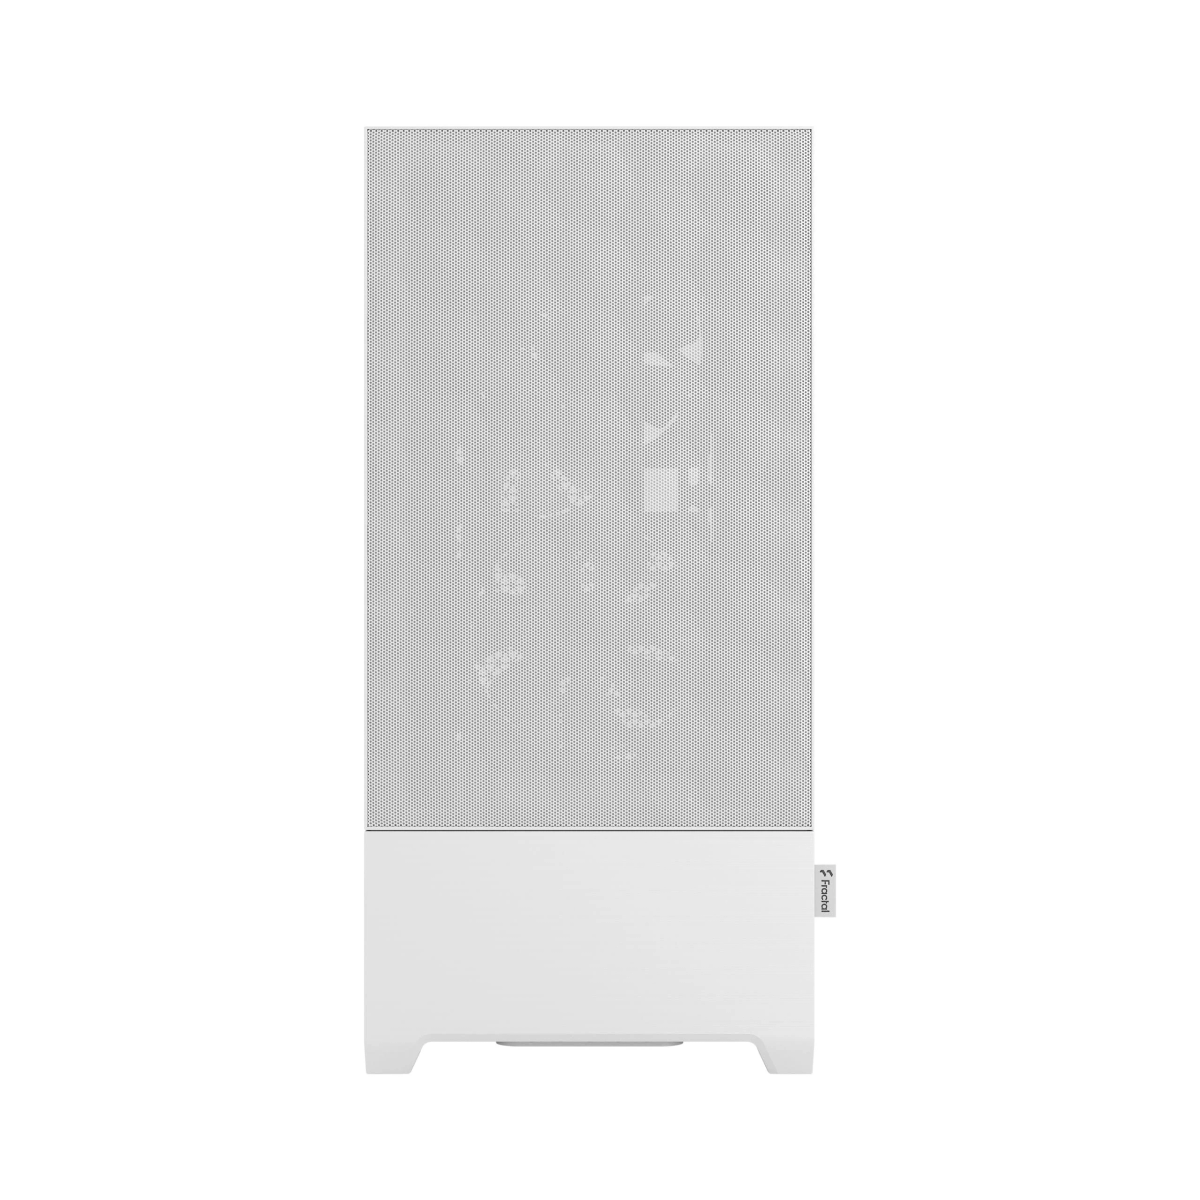 Weiß Gehäuse, DESIGN PC FRACTAL FD-C-POA1A-03